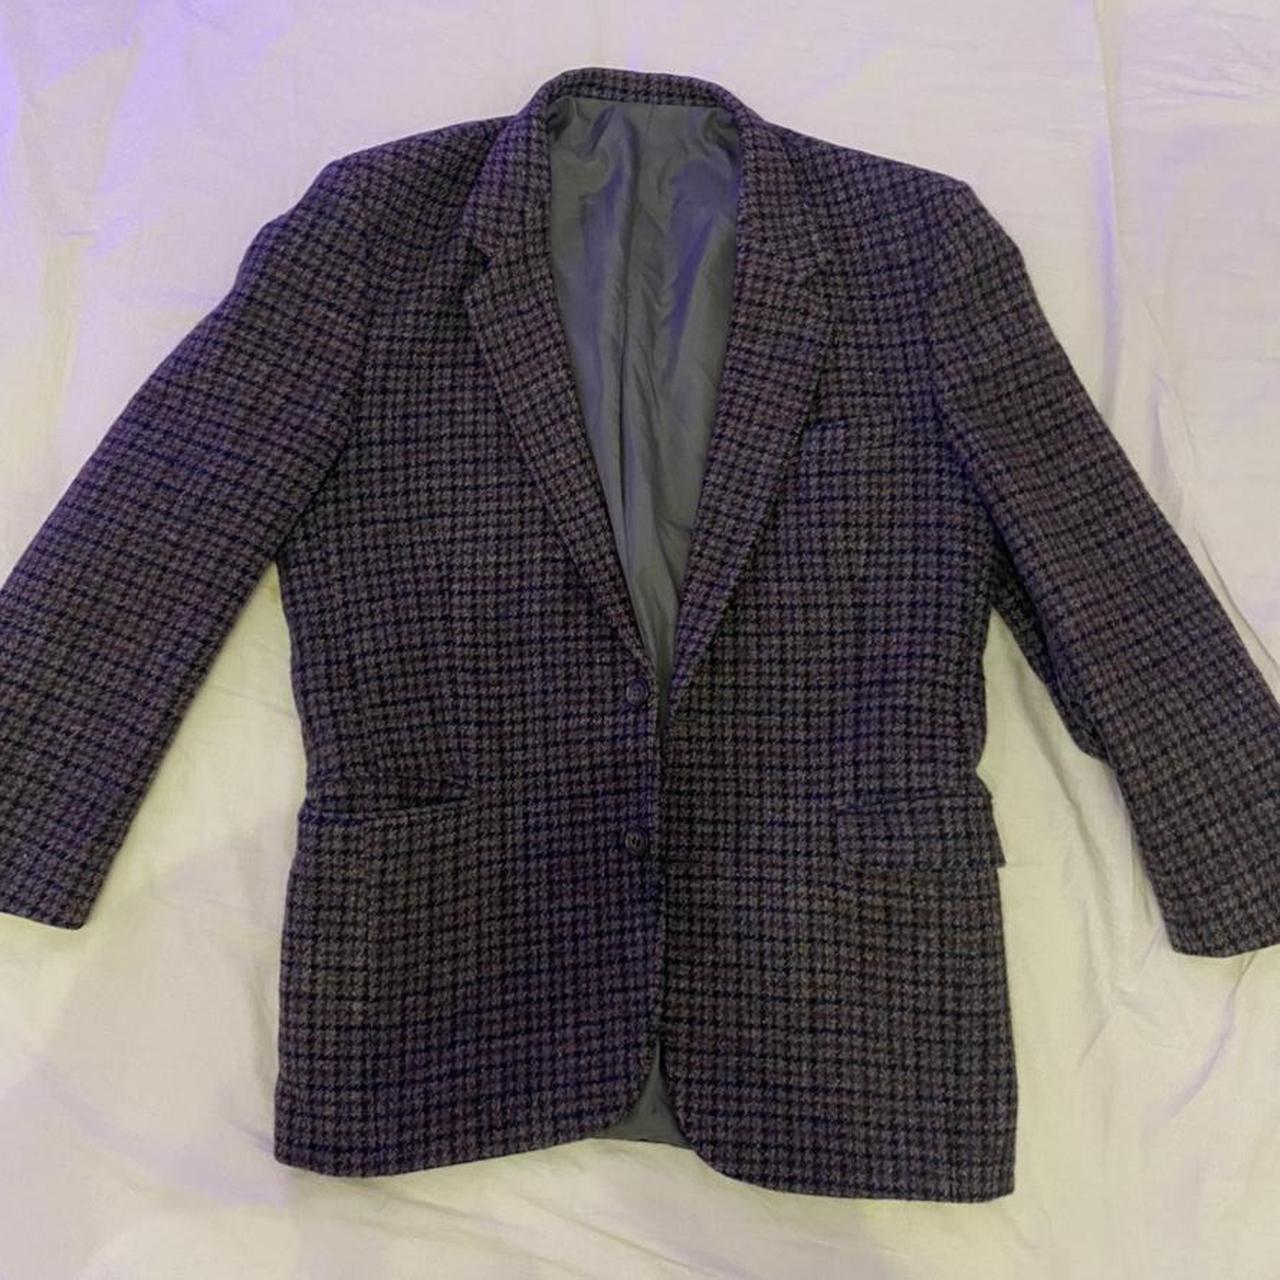 Vintage Harris Tweed dark purple tweed blazer !! I... - Depop